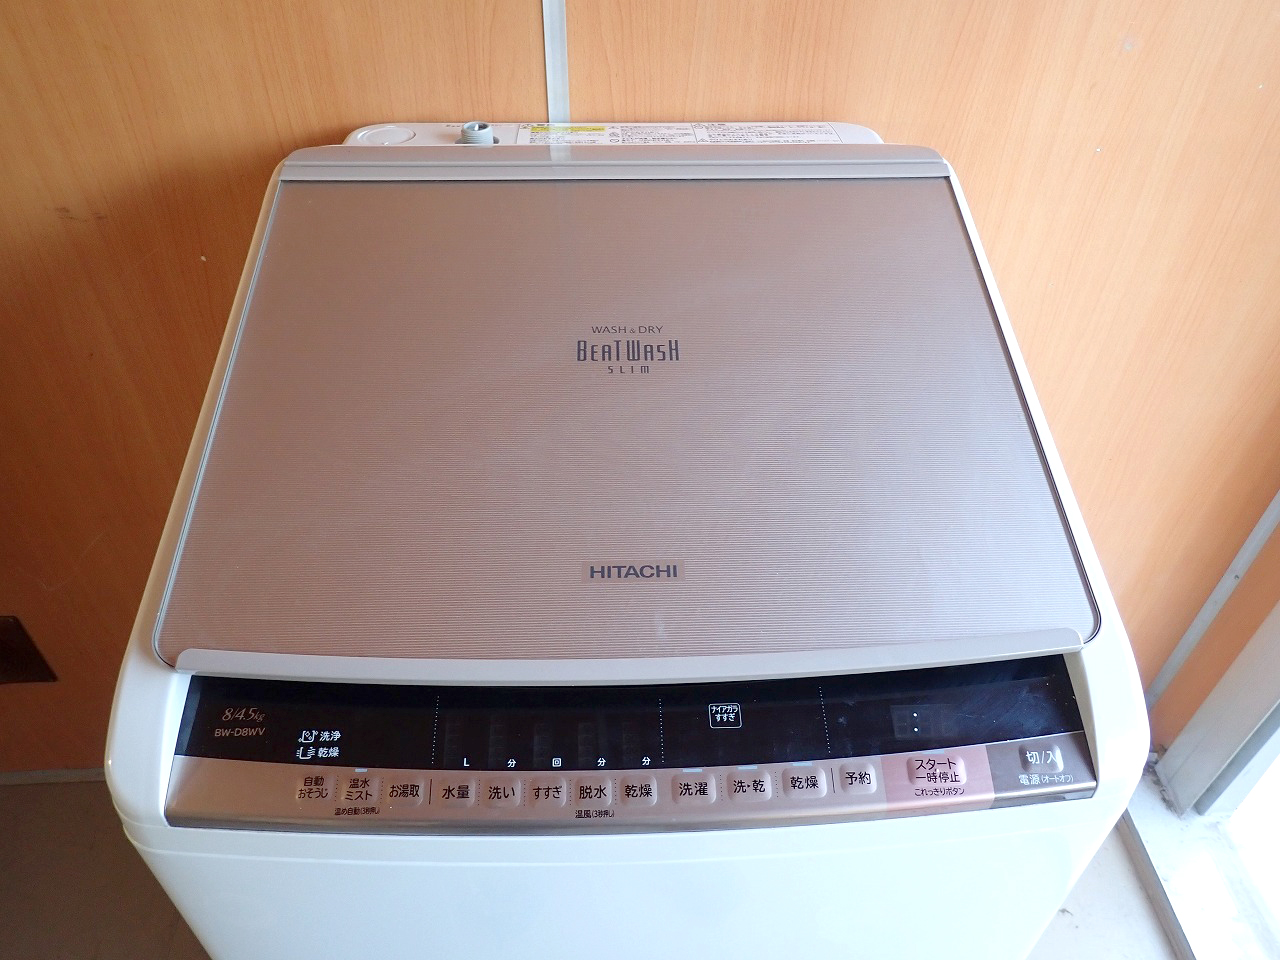 洗濯機 HITACHI BEAT WASH SLIM BW-D8WV 日立 ビートウォッシュ スリム 乾燥機 8kg 縦型 温水ナイアガラ